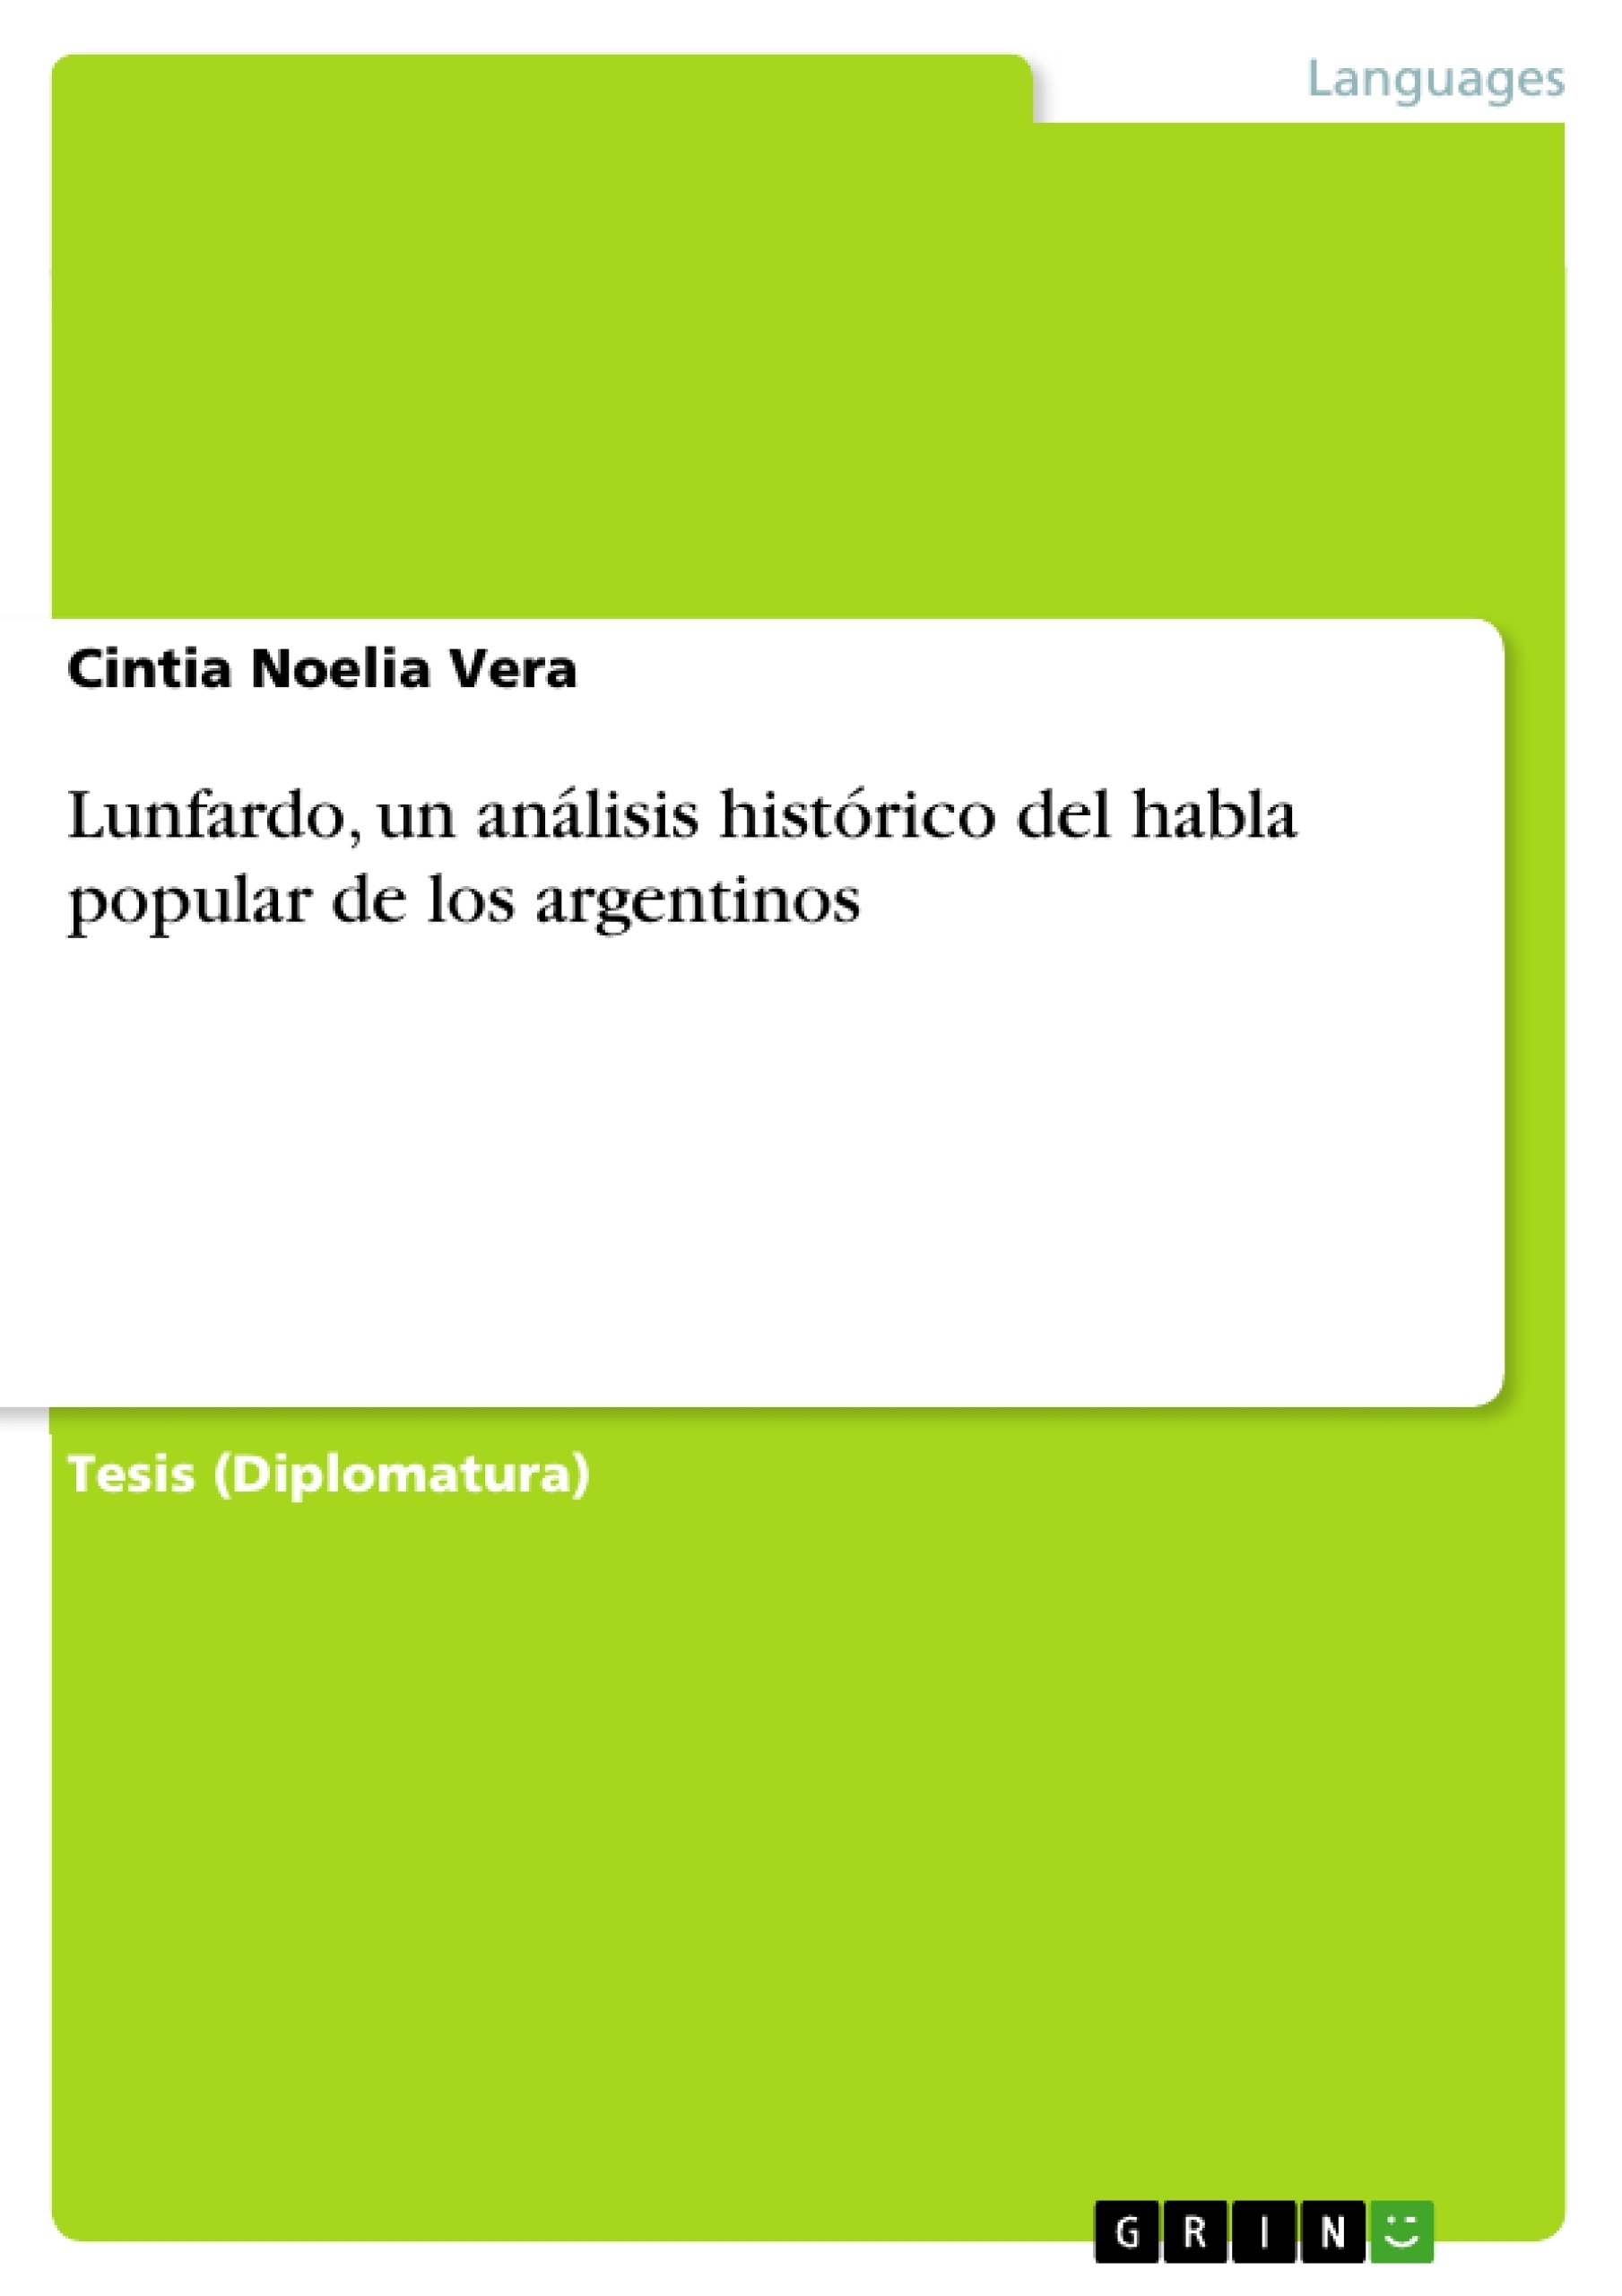 Titre: Lunfardo, un análisis histórico del habla popular de los argentinos